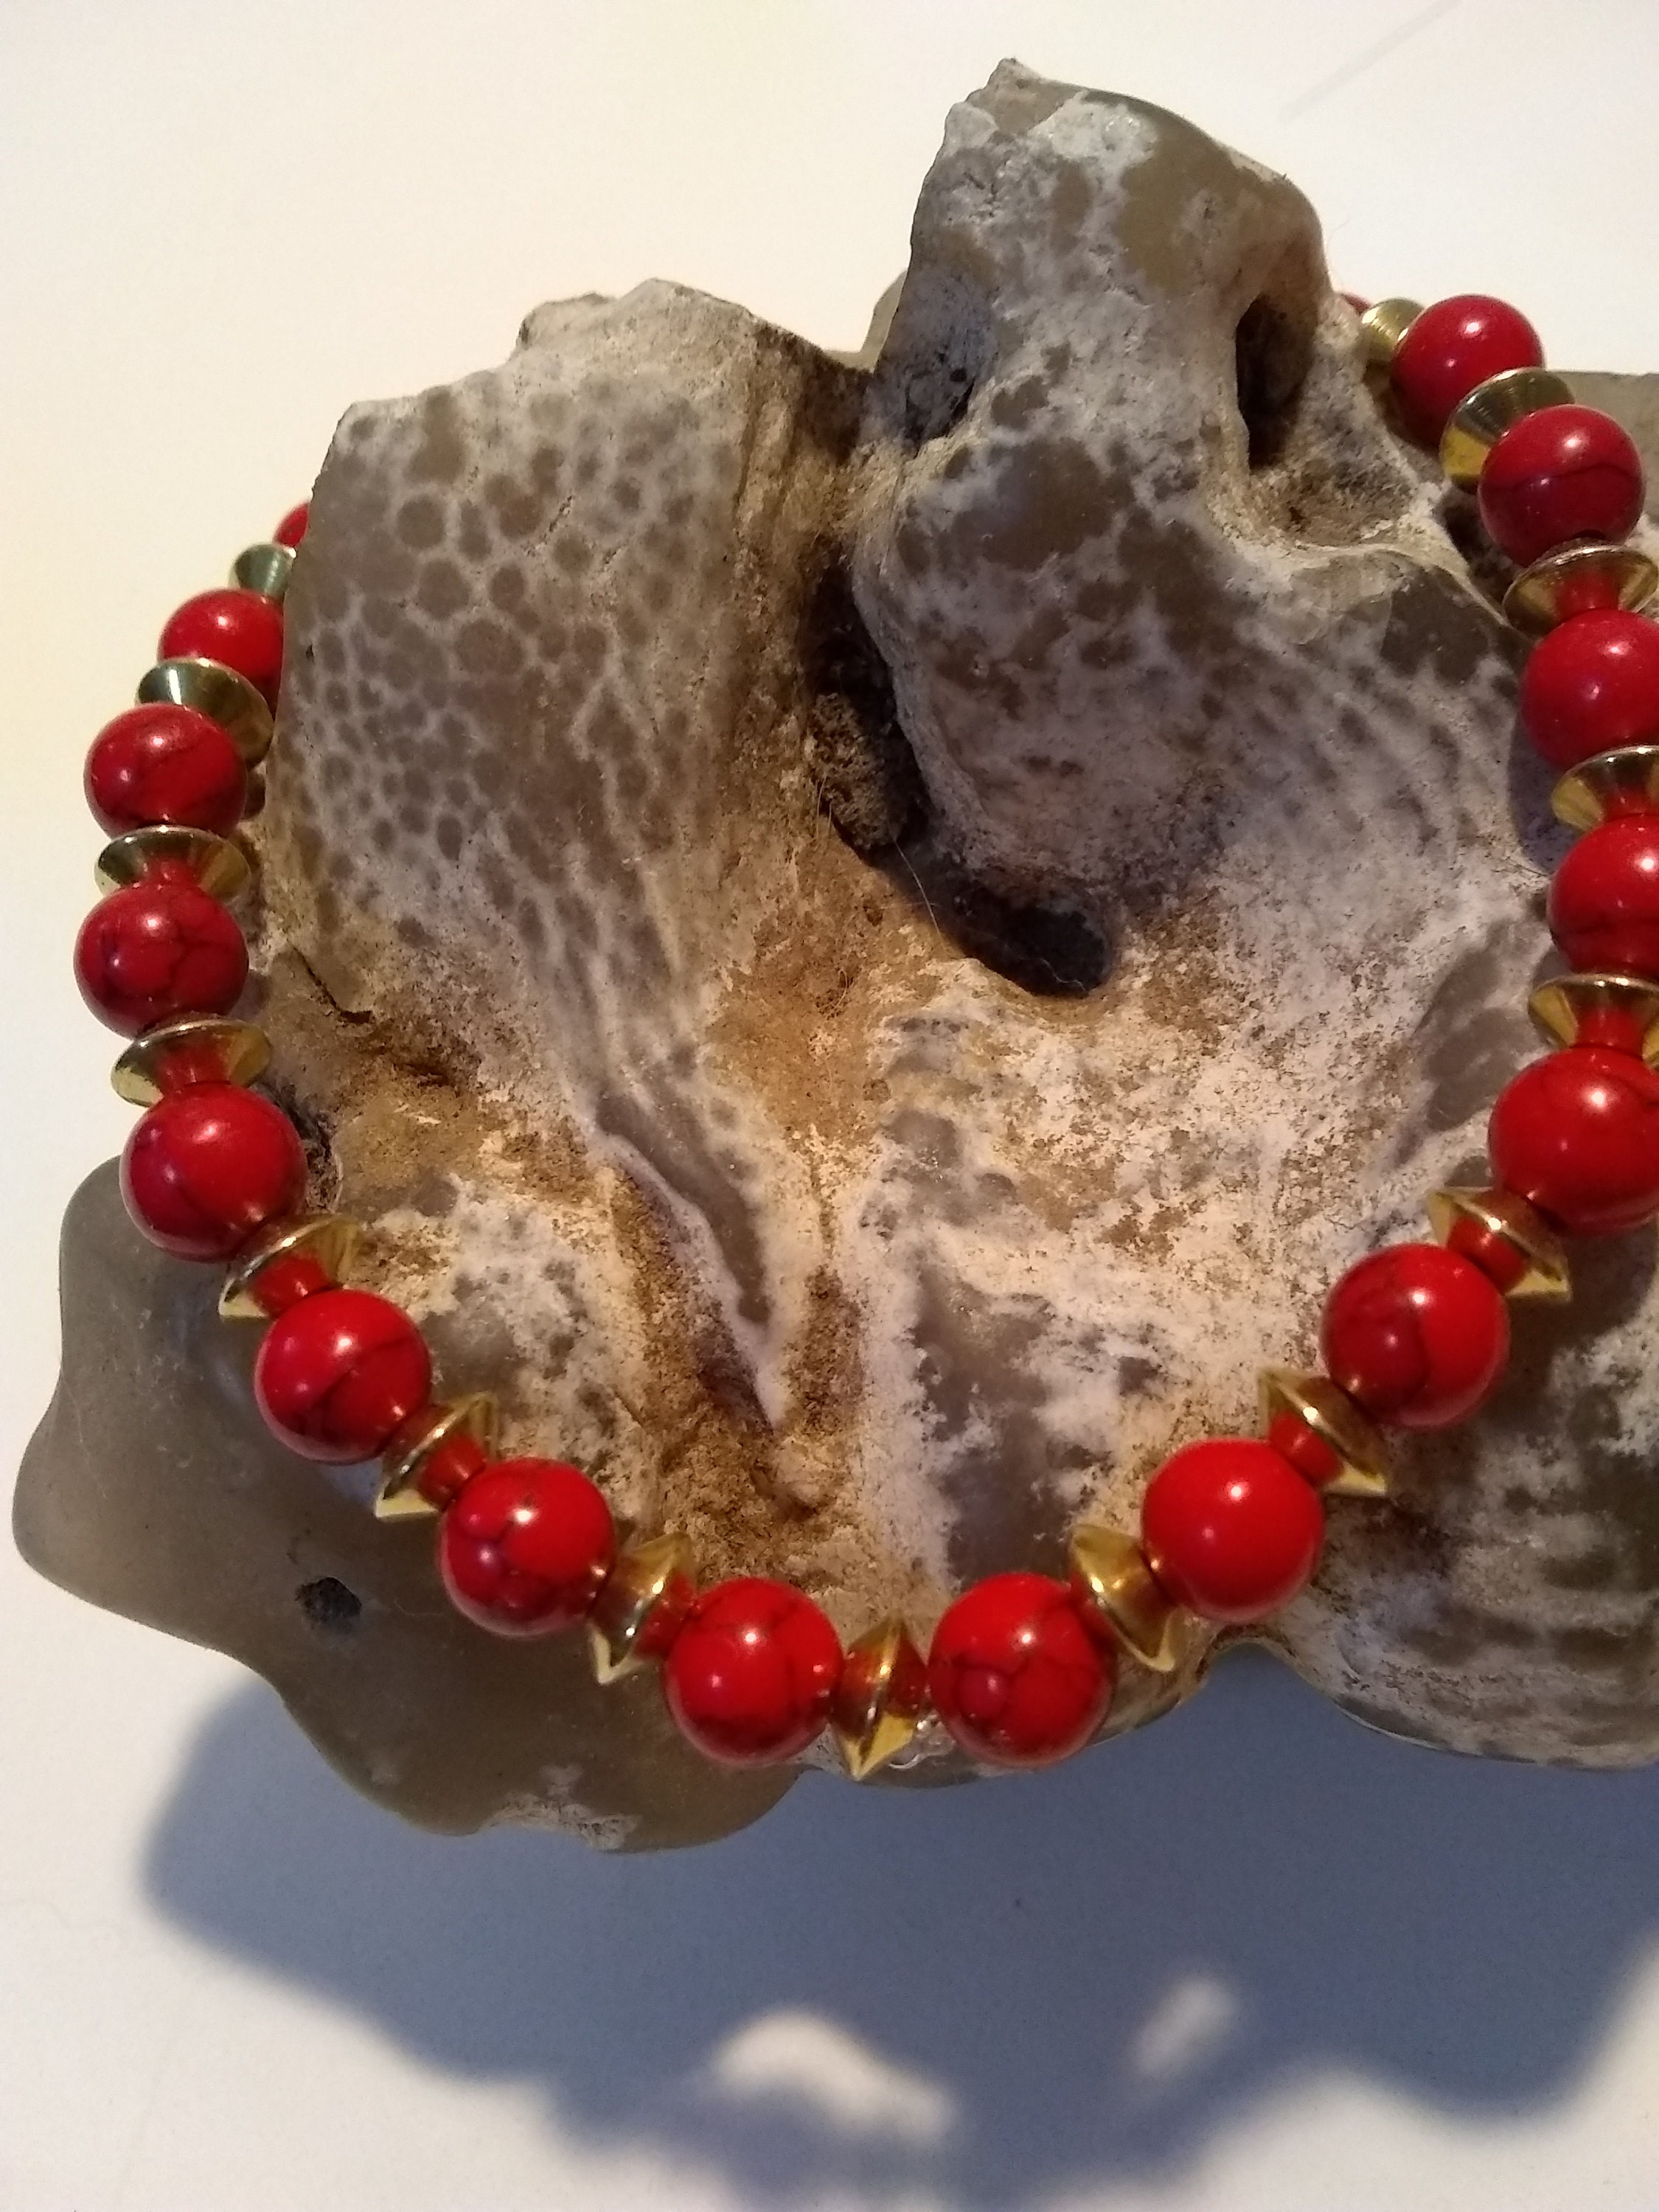 RED TURQUOISE Bracelet/red Beaded Bracelet/red Bracelet/red Stone ...